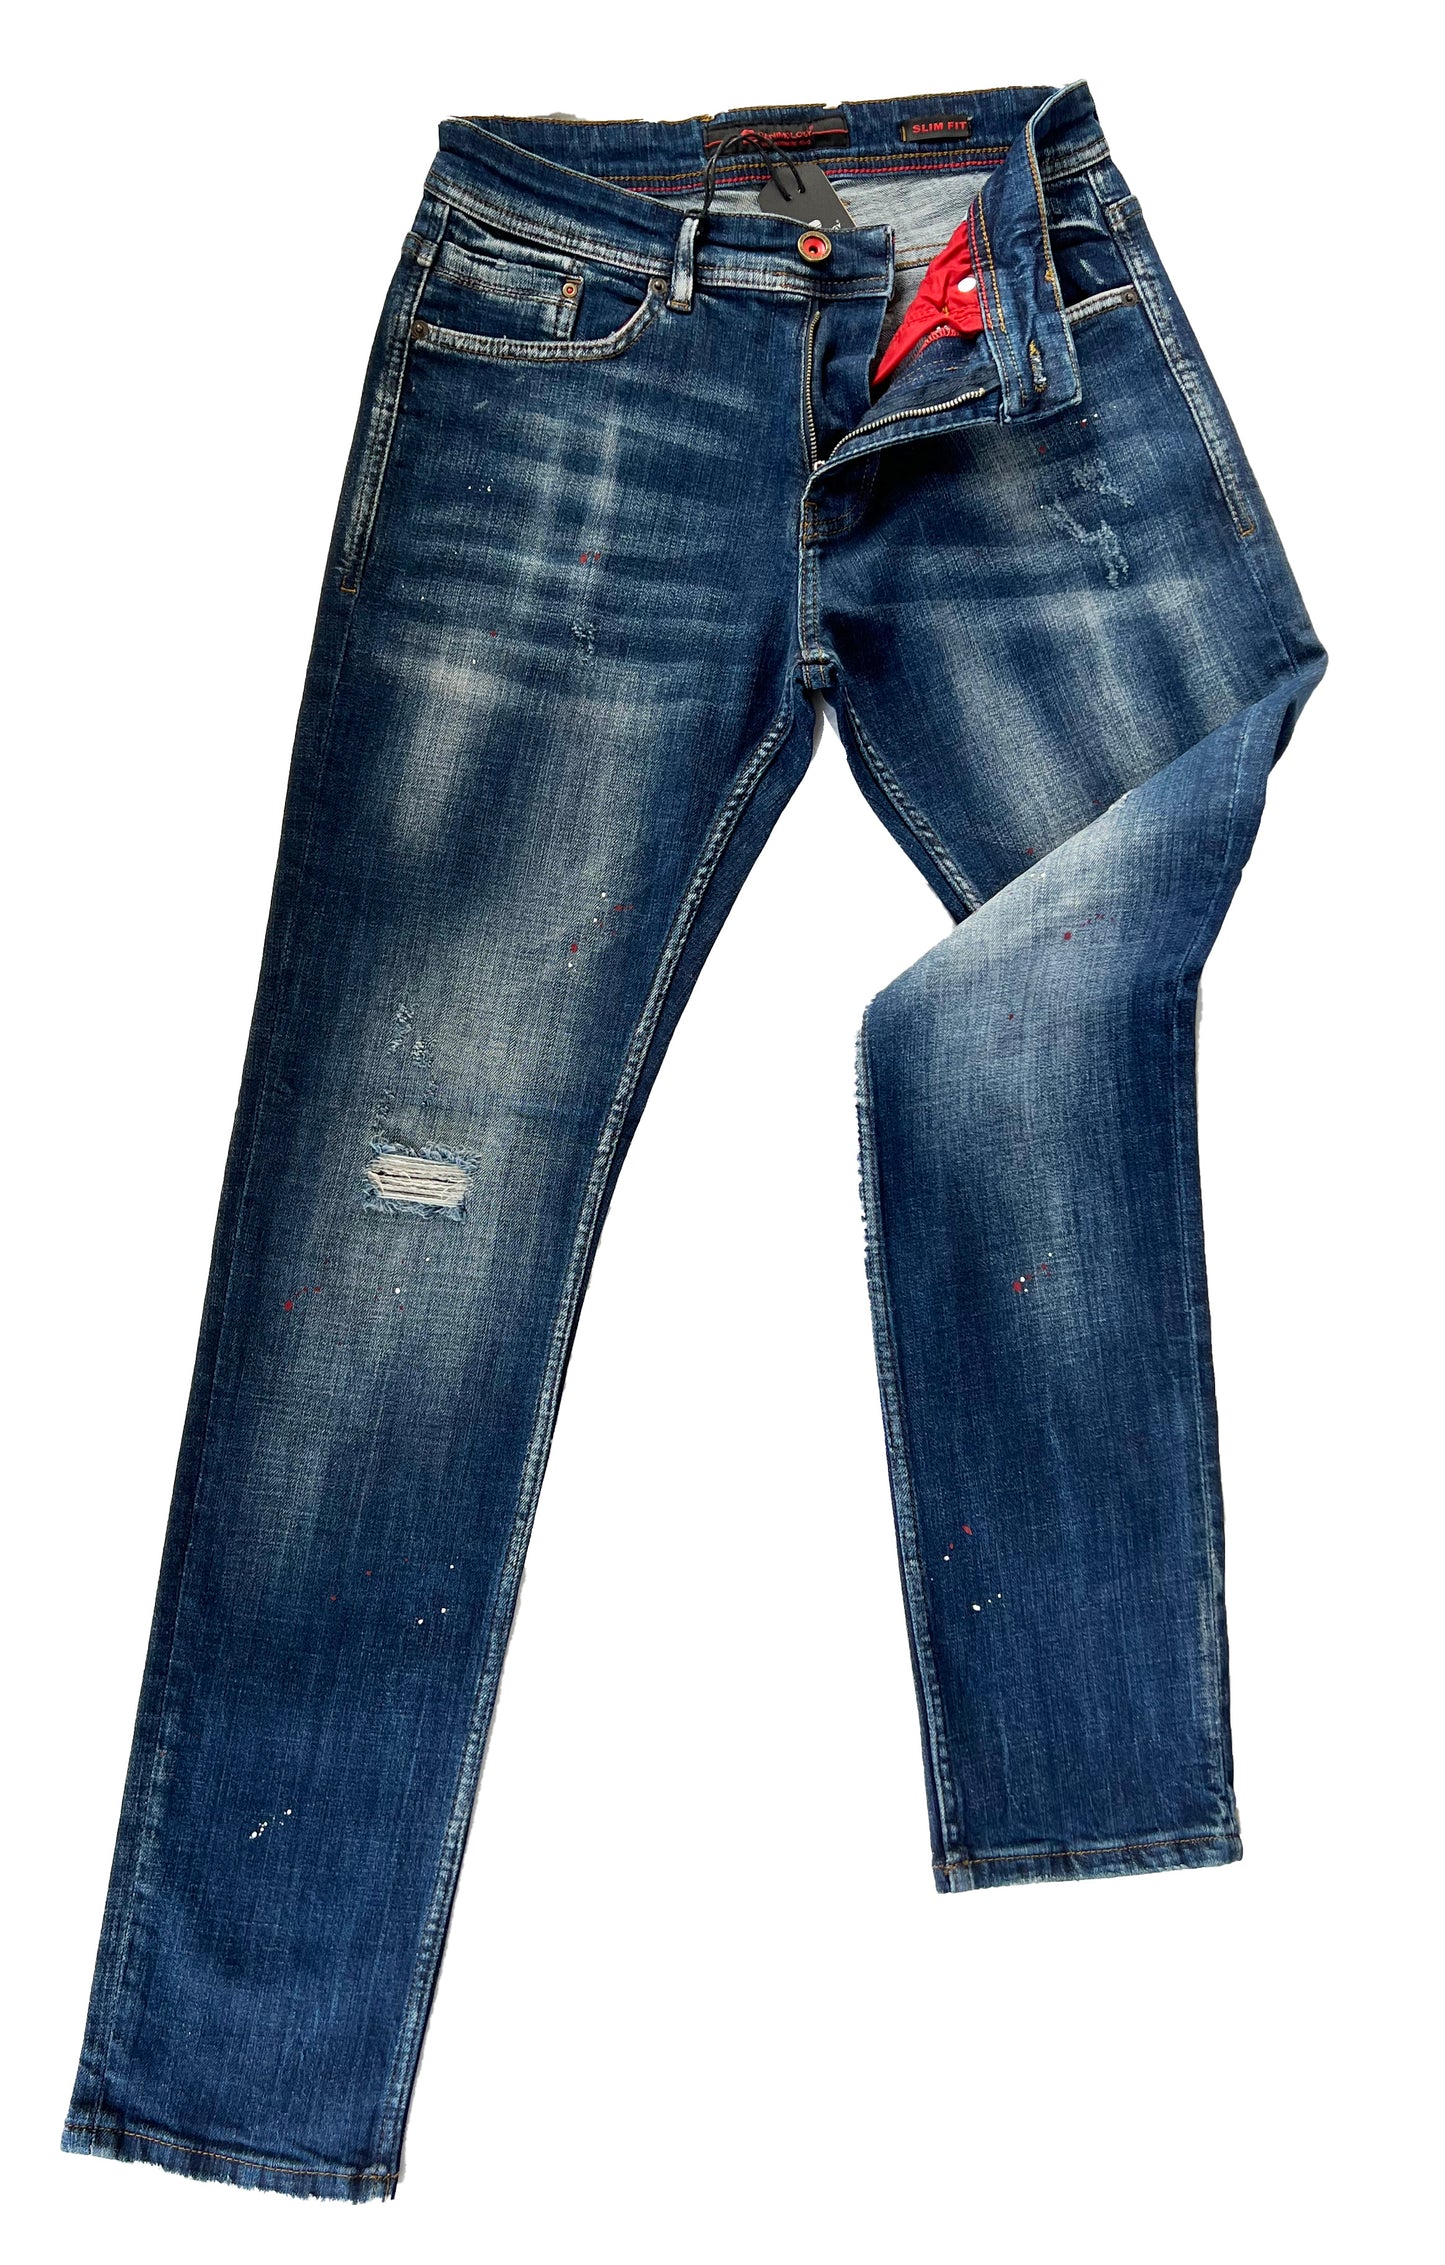 Jeans, Pantalons Confortables Coupe Slim Homme - Darwen 